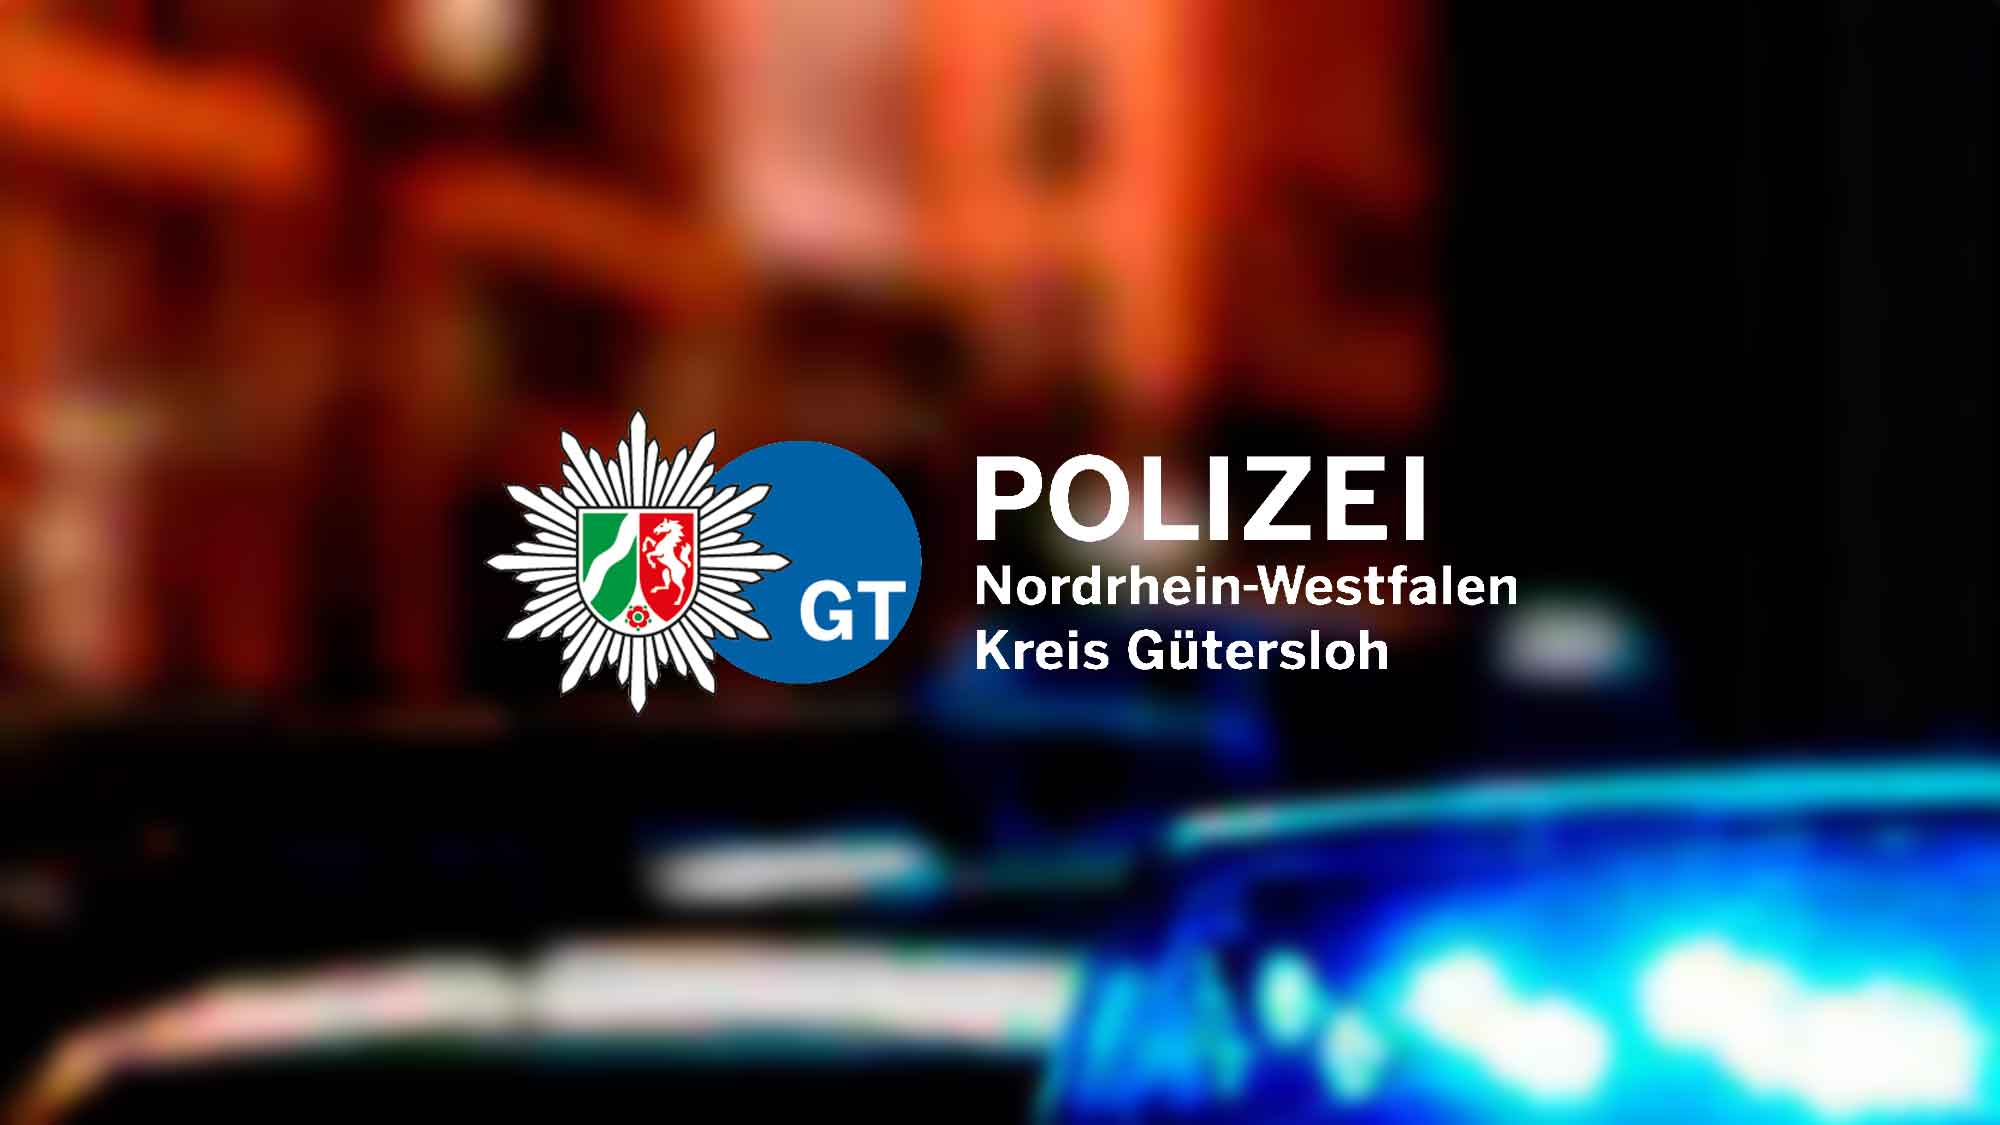 Polizei Gütersloh: Ruhiges Einsatzgeschehen an den Weihnachtstagen trotz Wetterlage